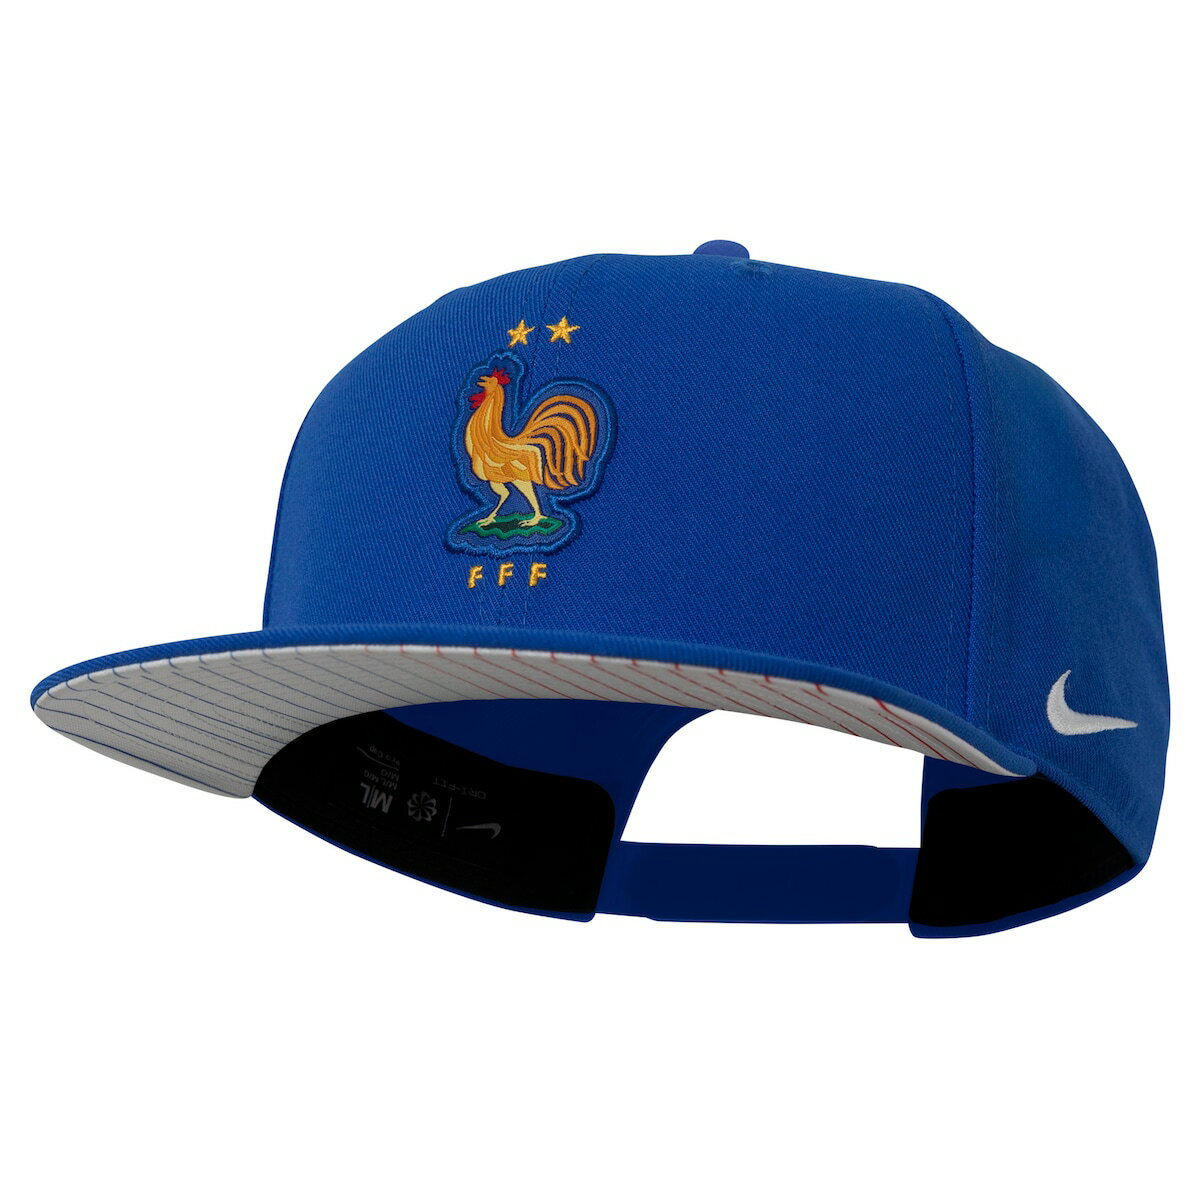 Men's Nike Royal France National Team Pro Snapback Hat